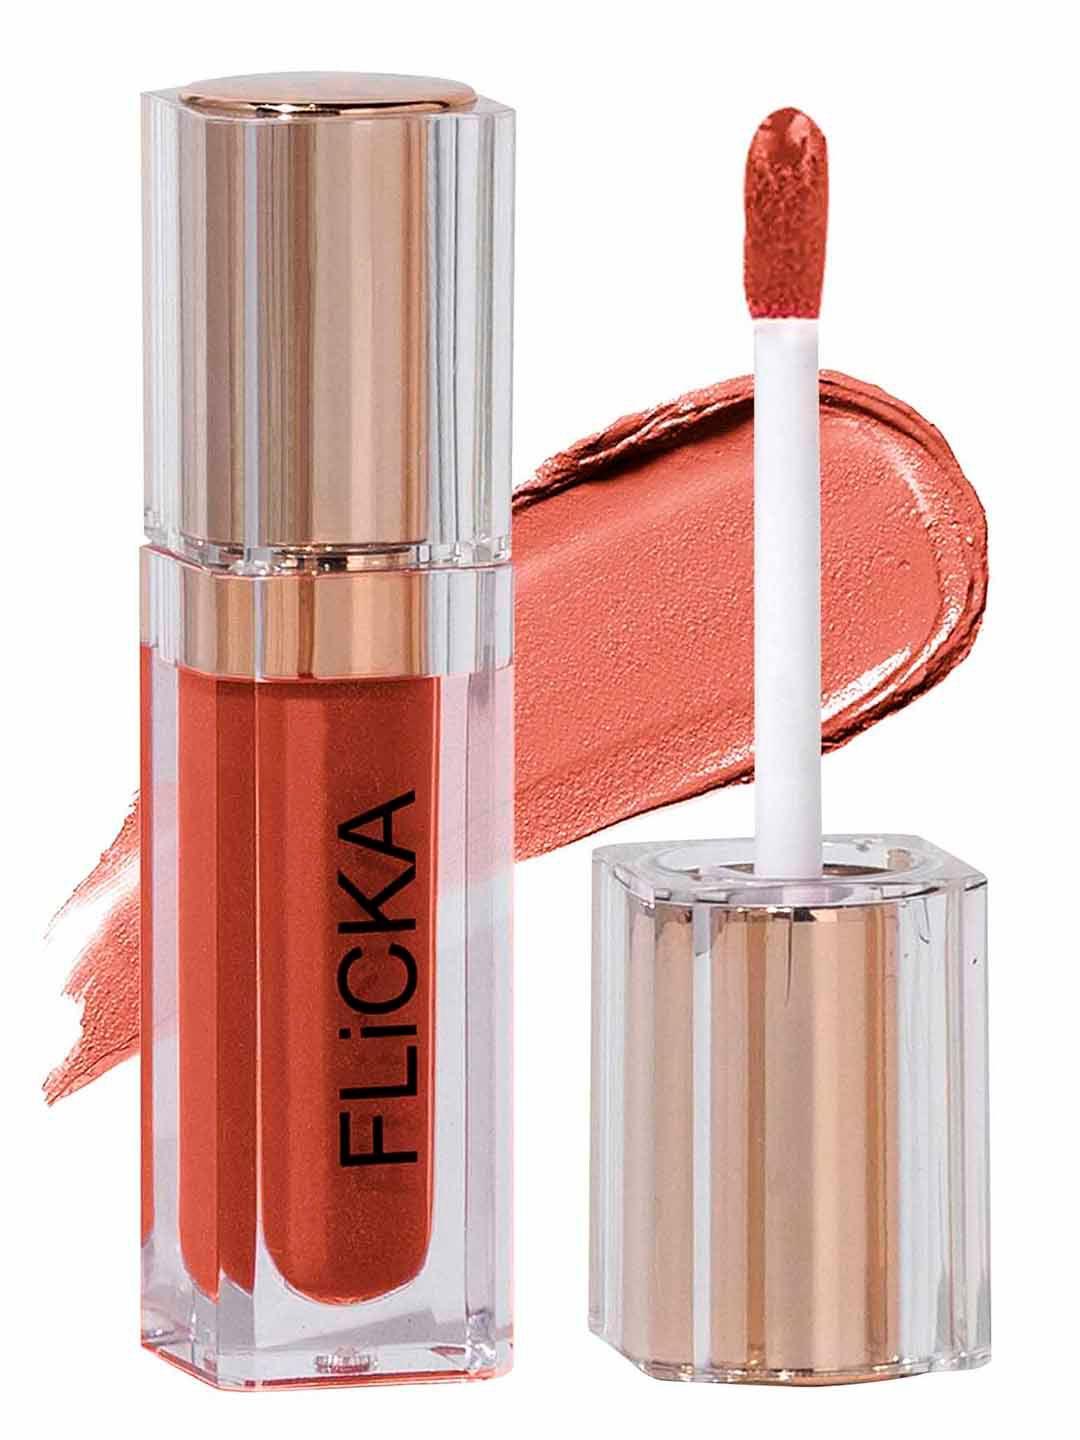 flicka-r-u-ready-matte-finish-liquid-lipstick-with-vitamin-e-5ml---buff-nude-05